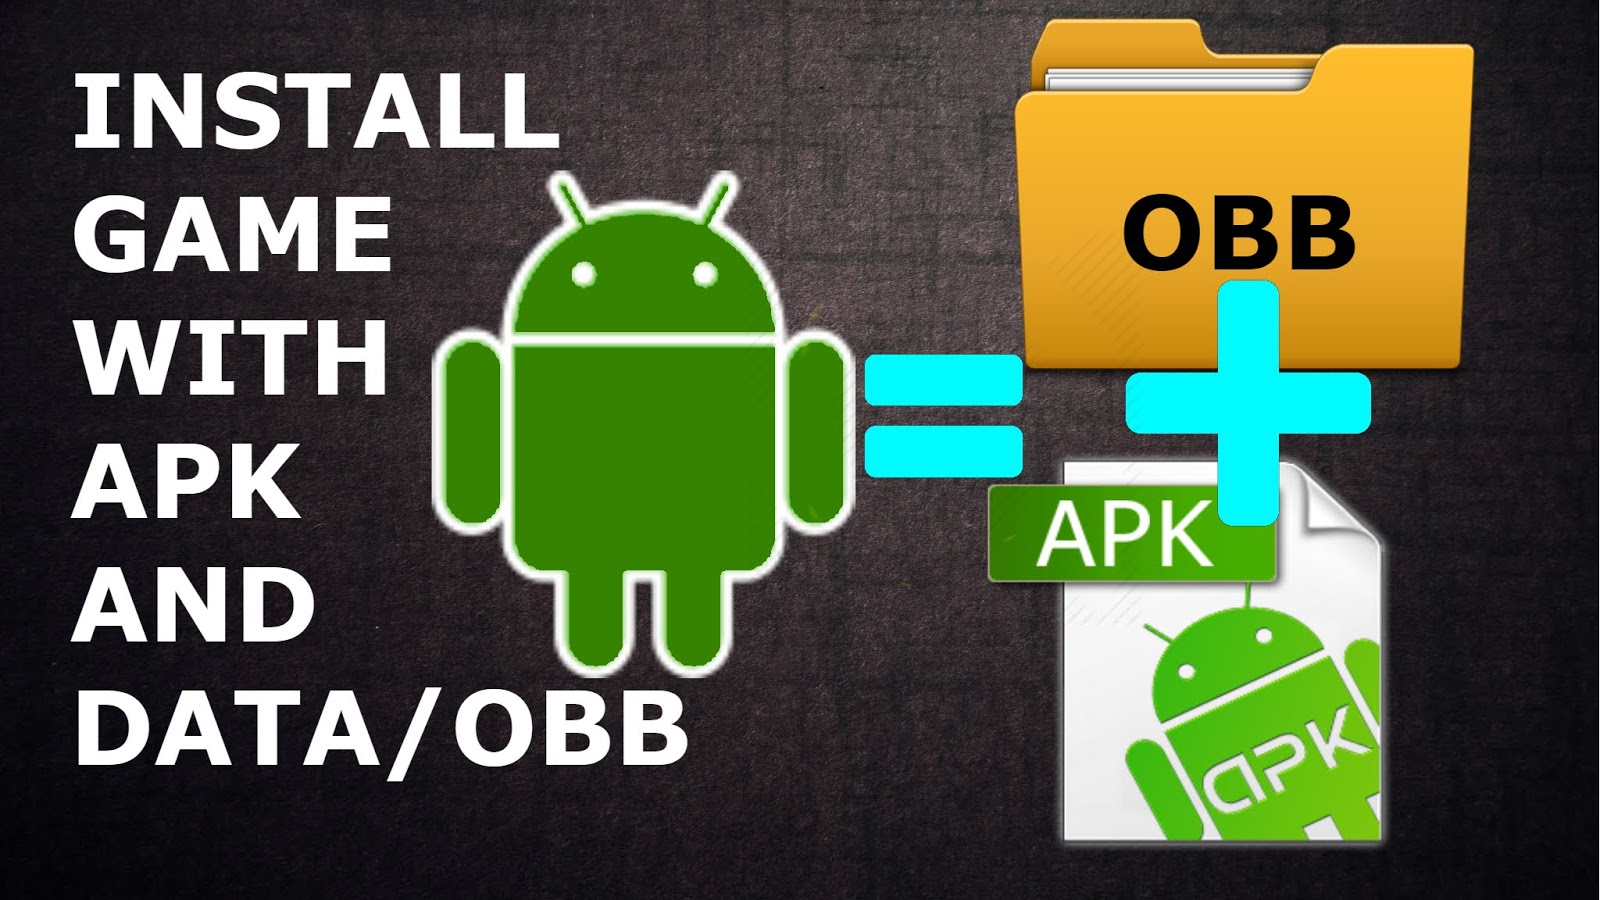 Install игра. Sdcard/Android/OBB. Установка APK. Android OBB на телефоне.